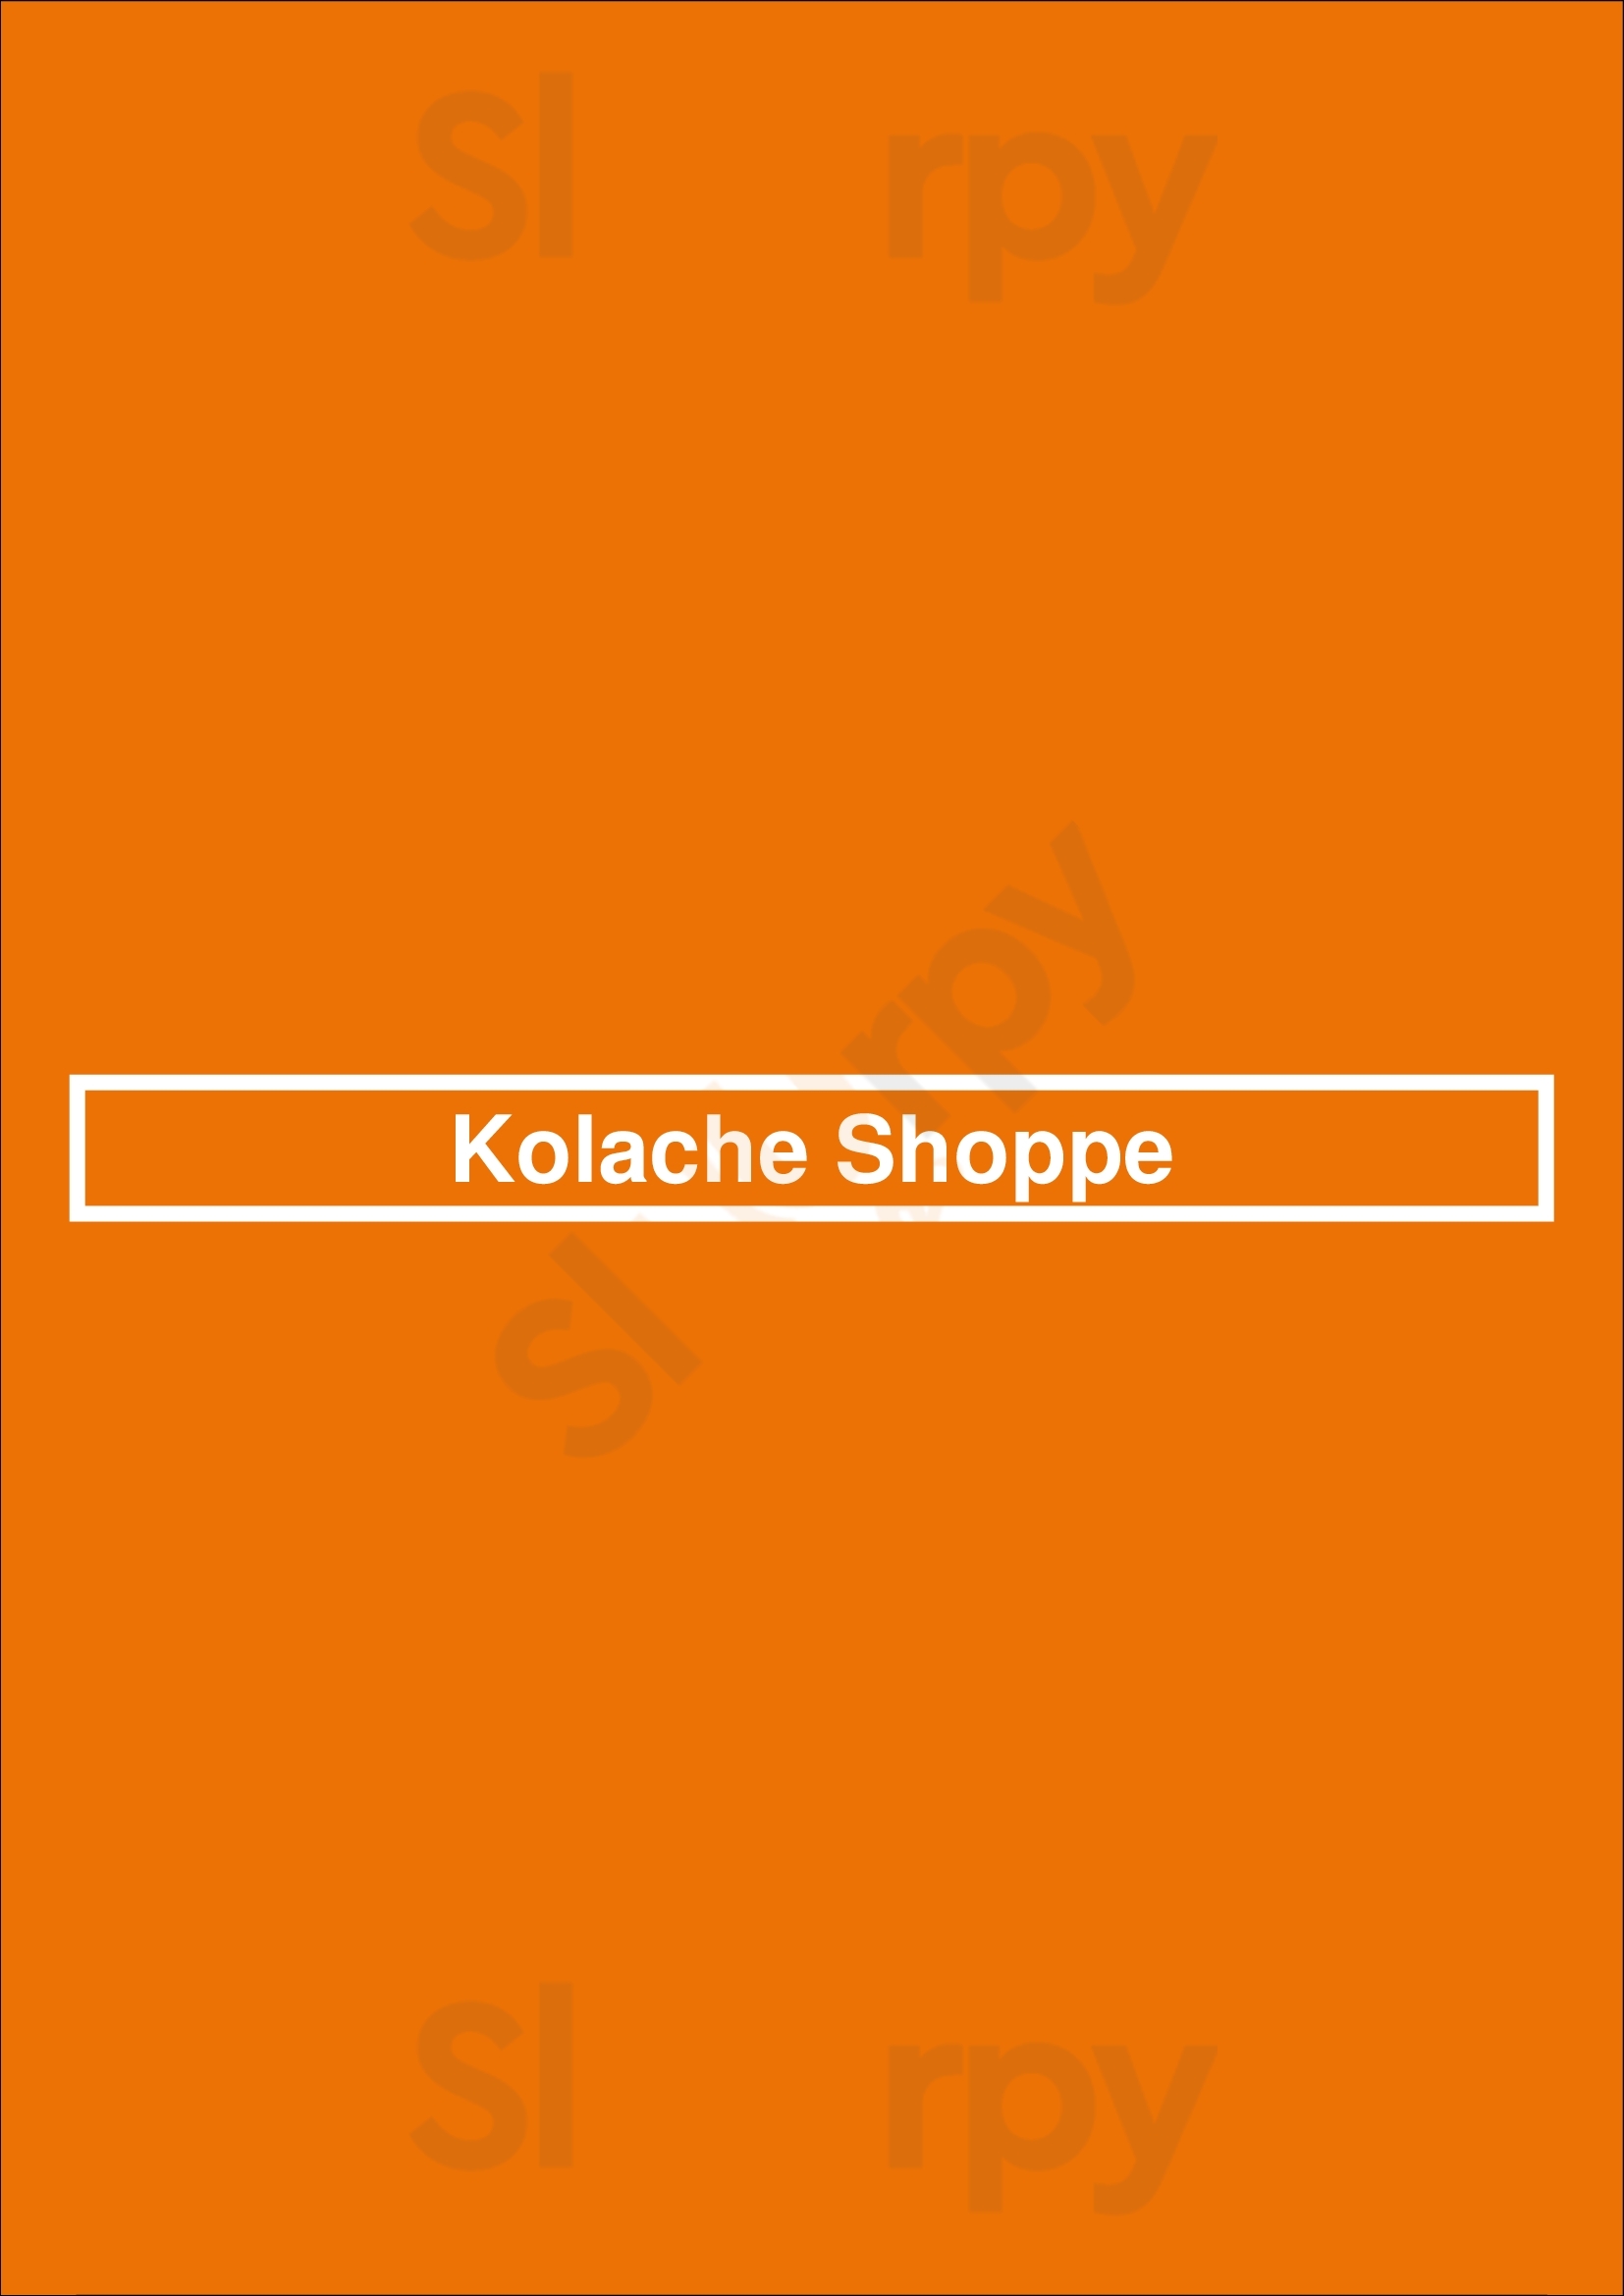 Kolache Shoppe - Greenway Houston Menu - 1